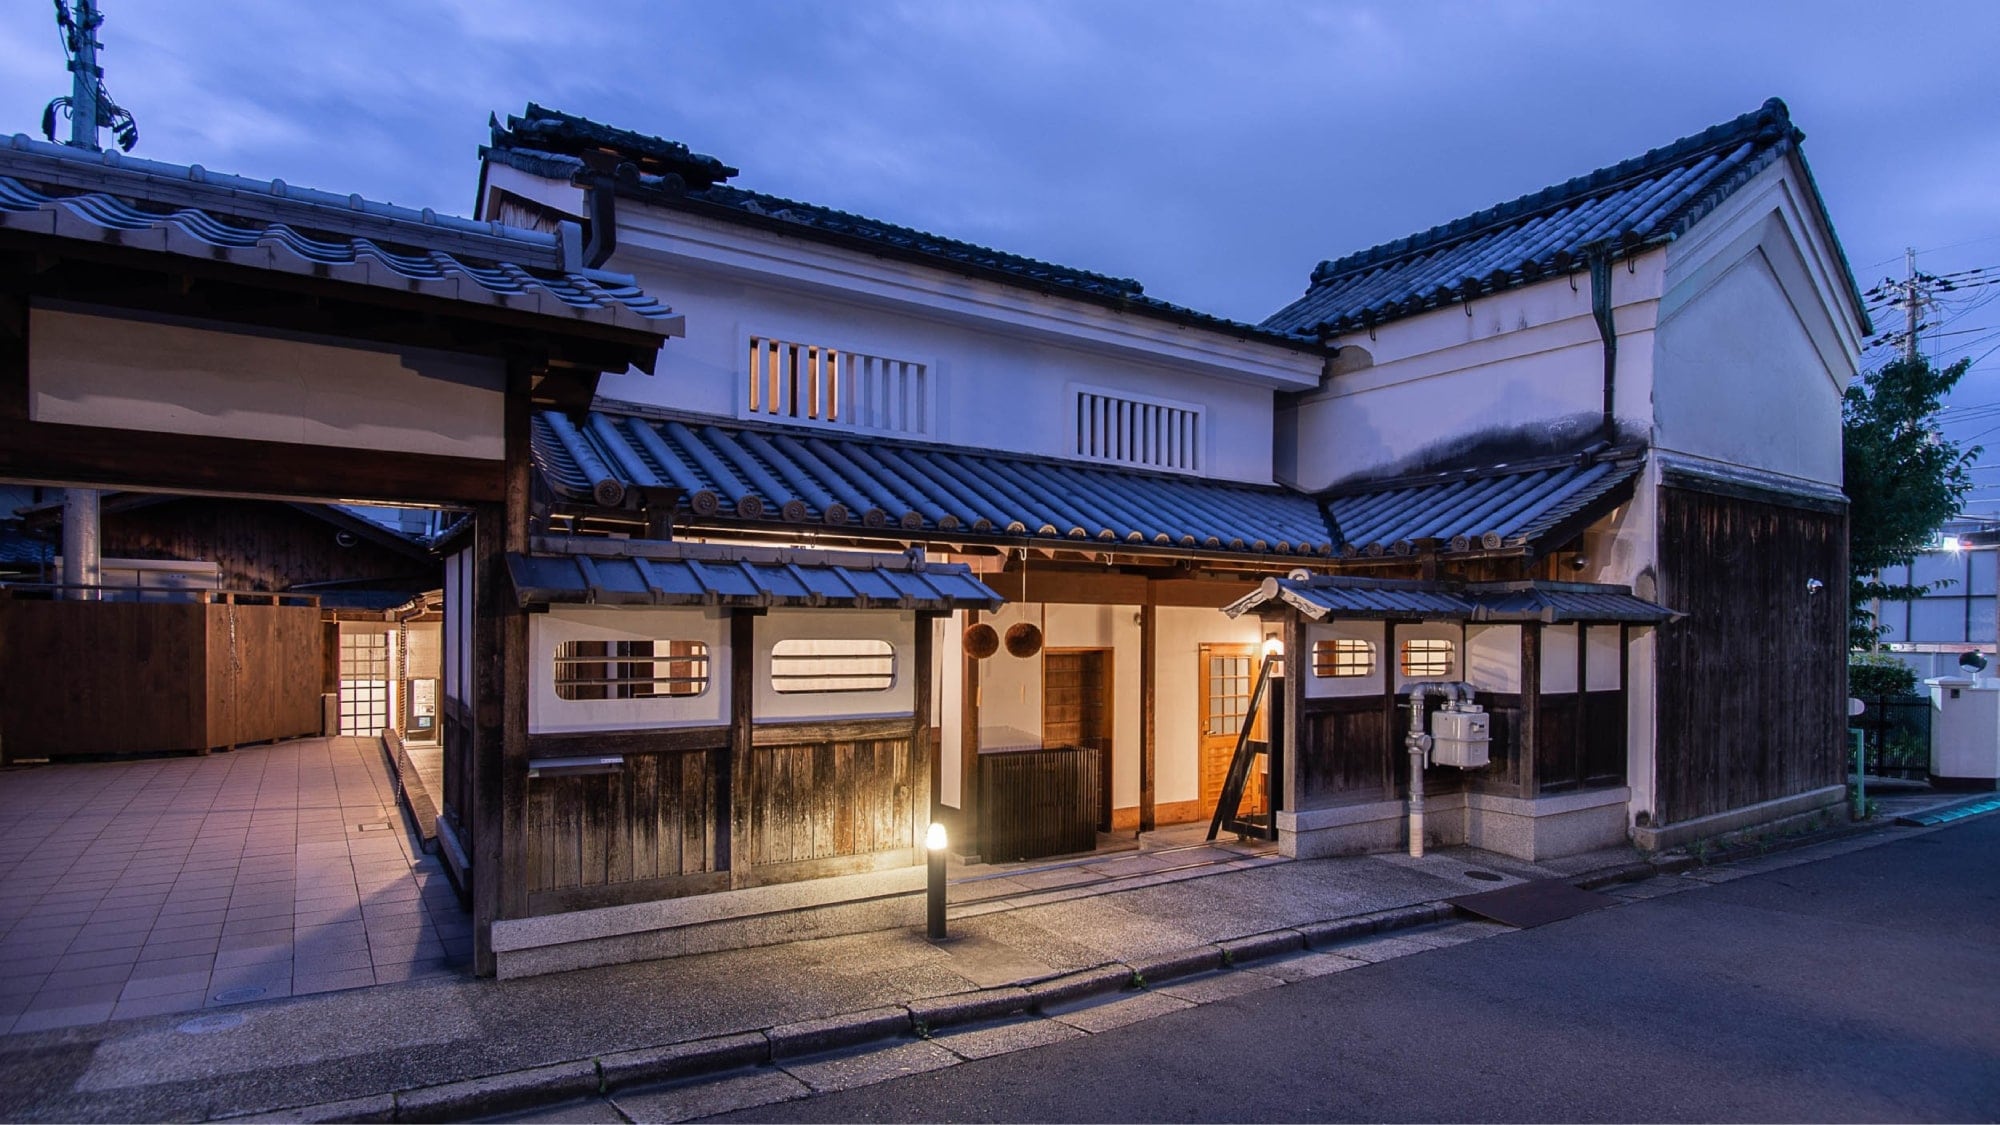 NIPPONIAHOTEL Nara Naramachi adalah bekas tempat pembuatan sake dan tempat tinggal Pabrik Sake Toyosawa.